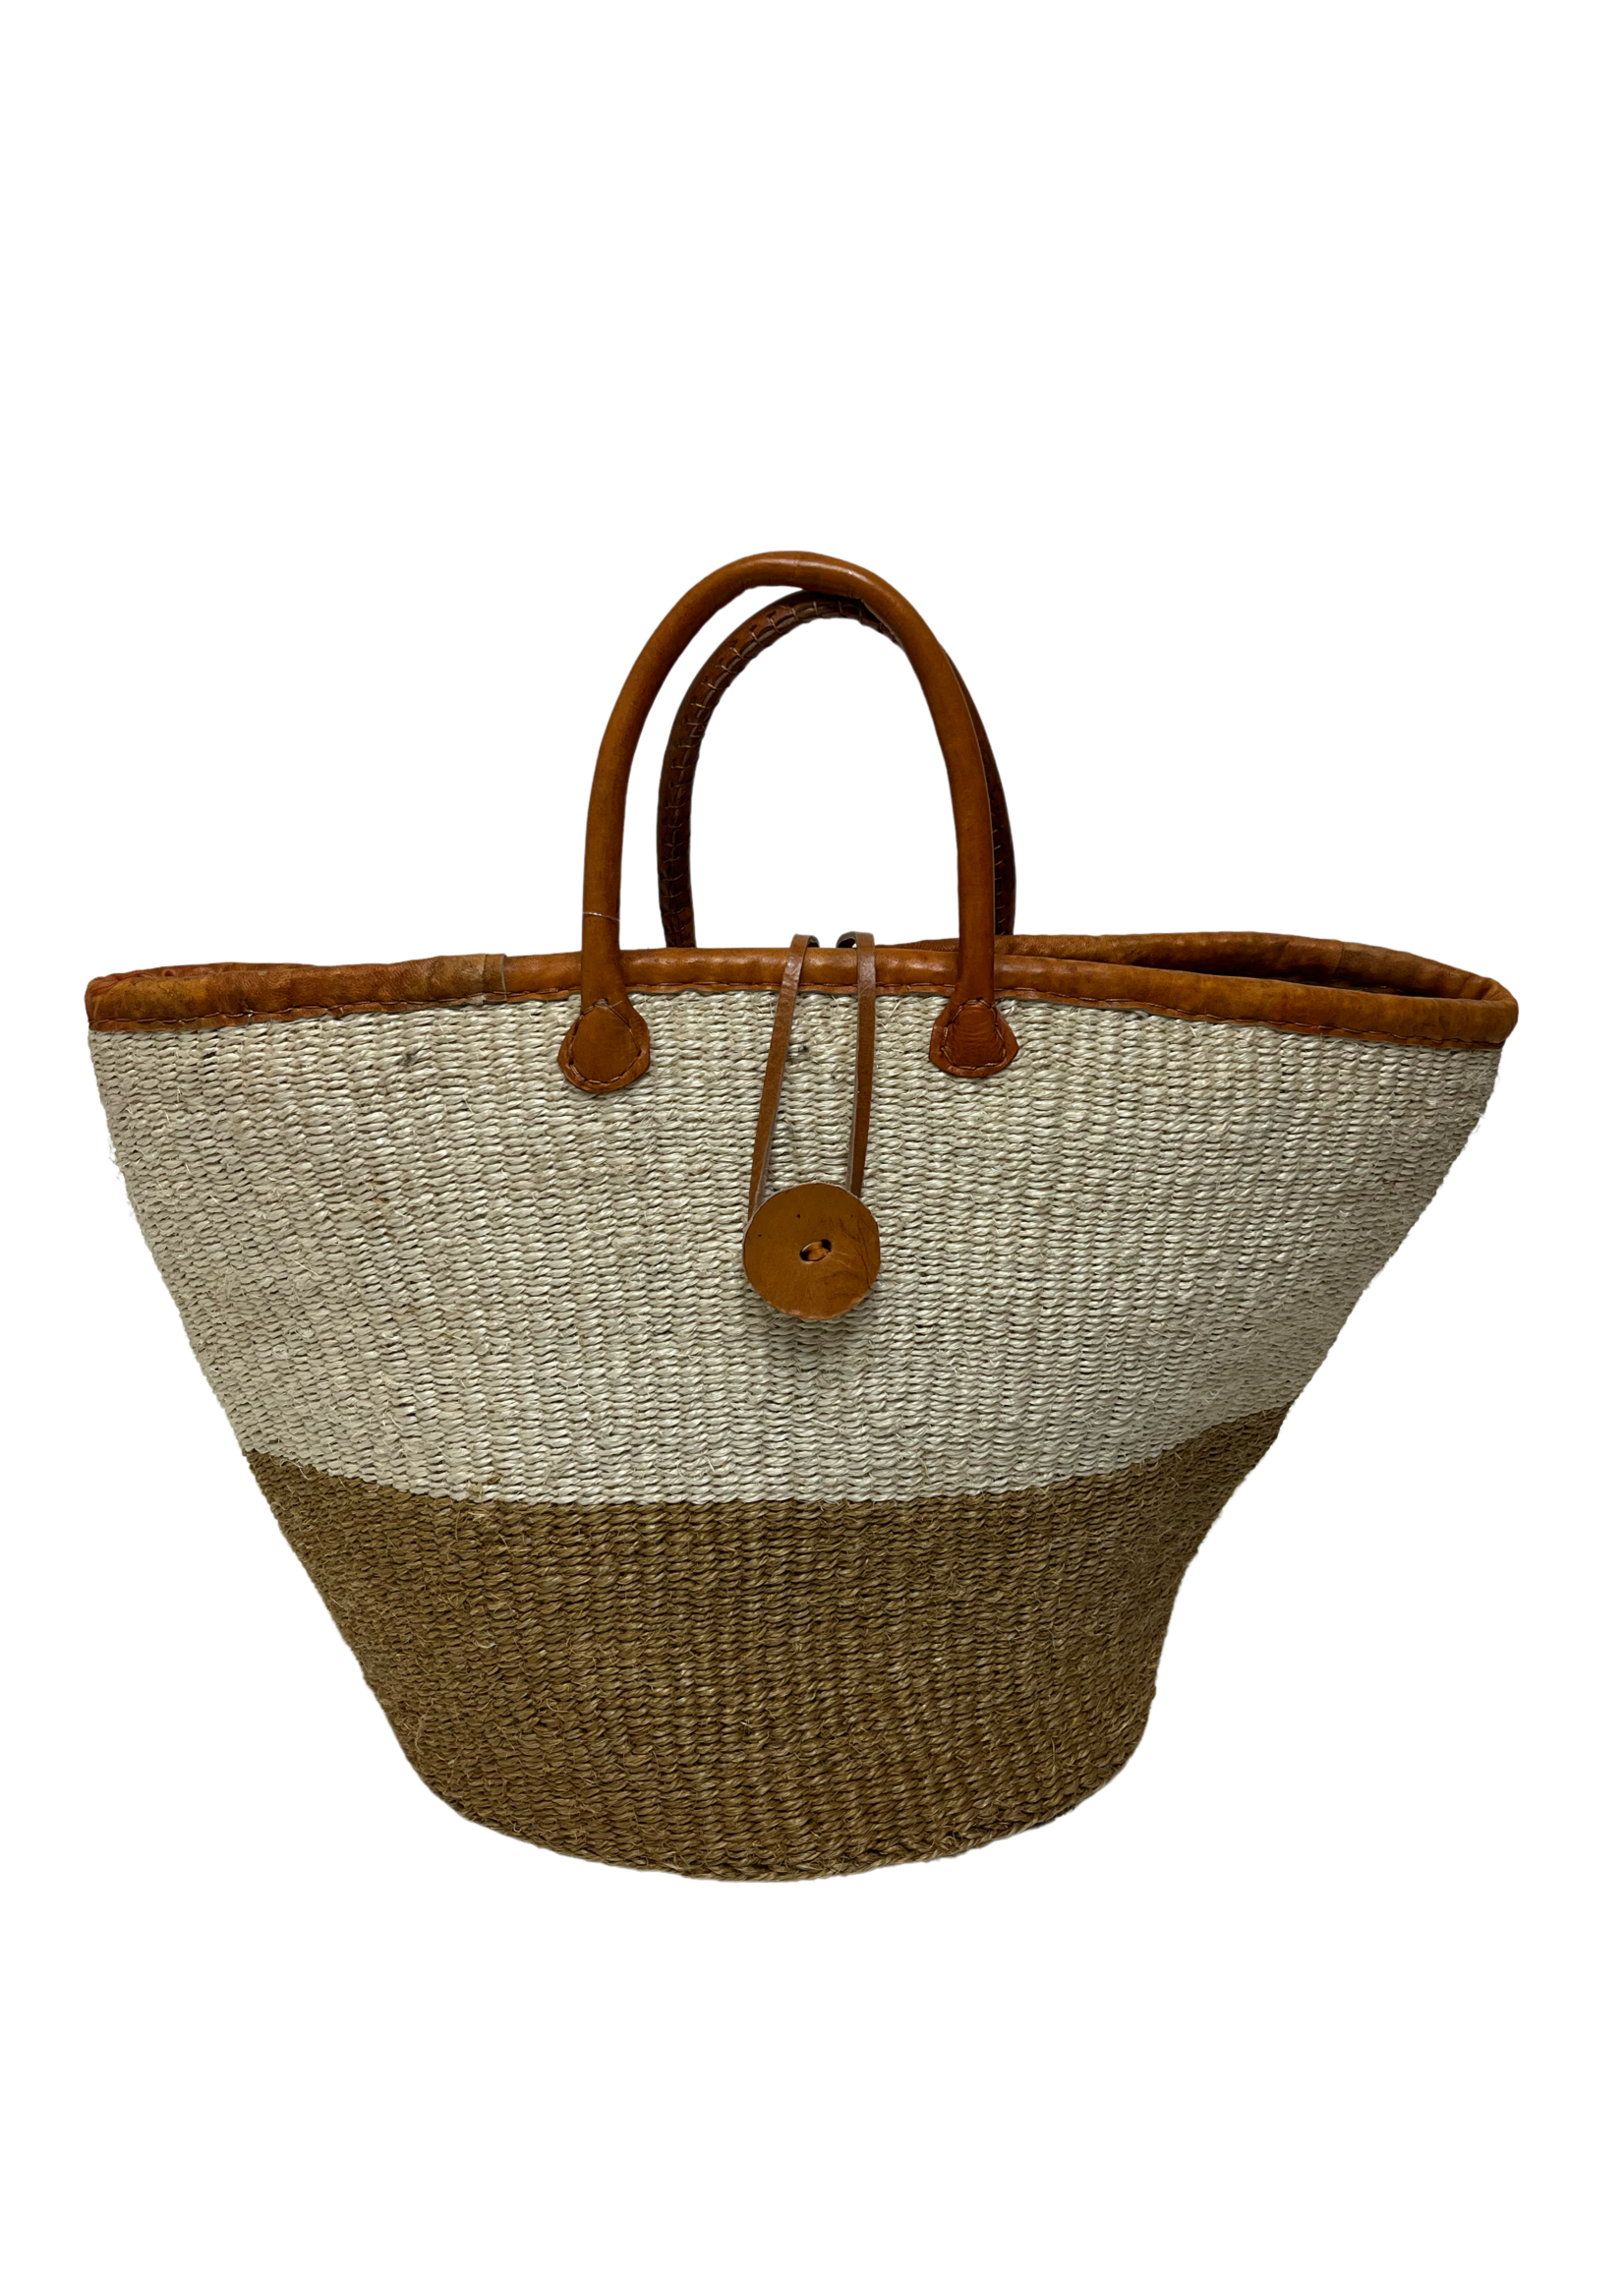 UG Woven Leather Bag/Basket